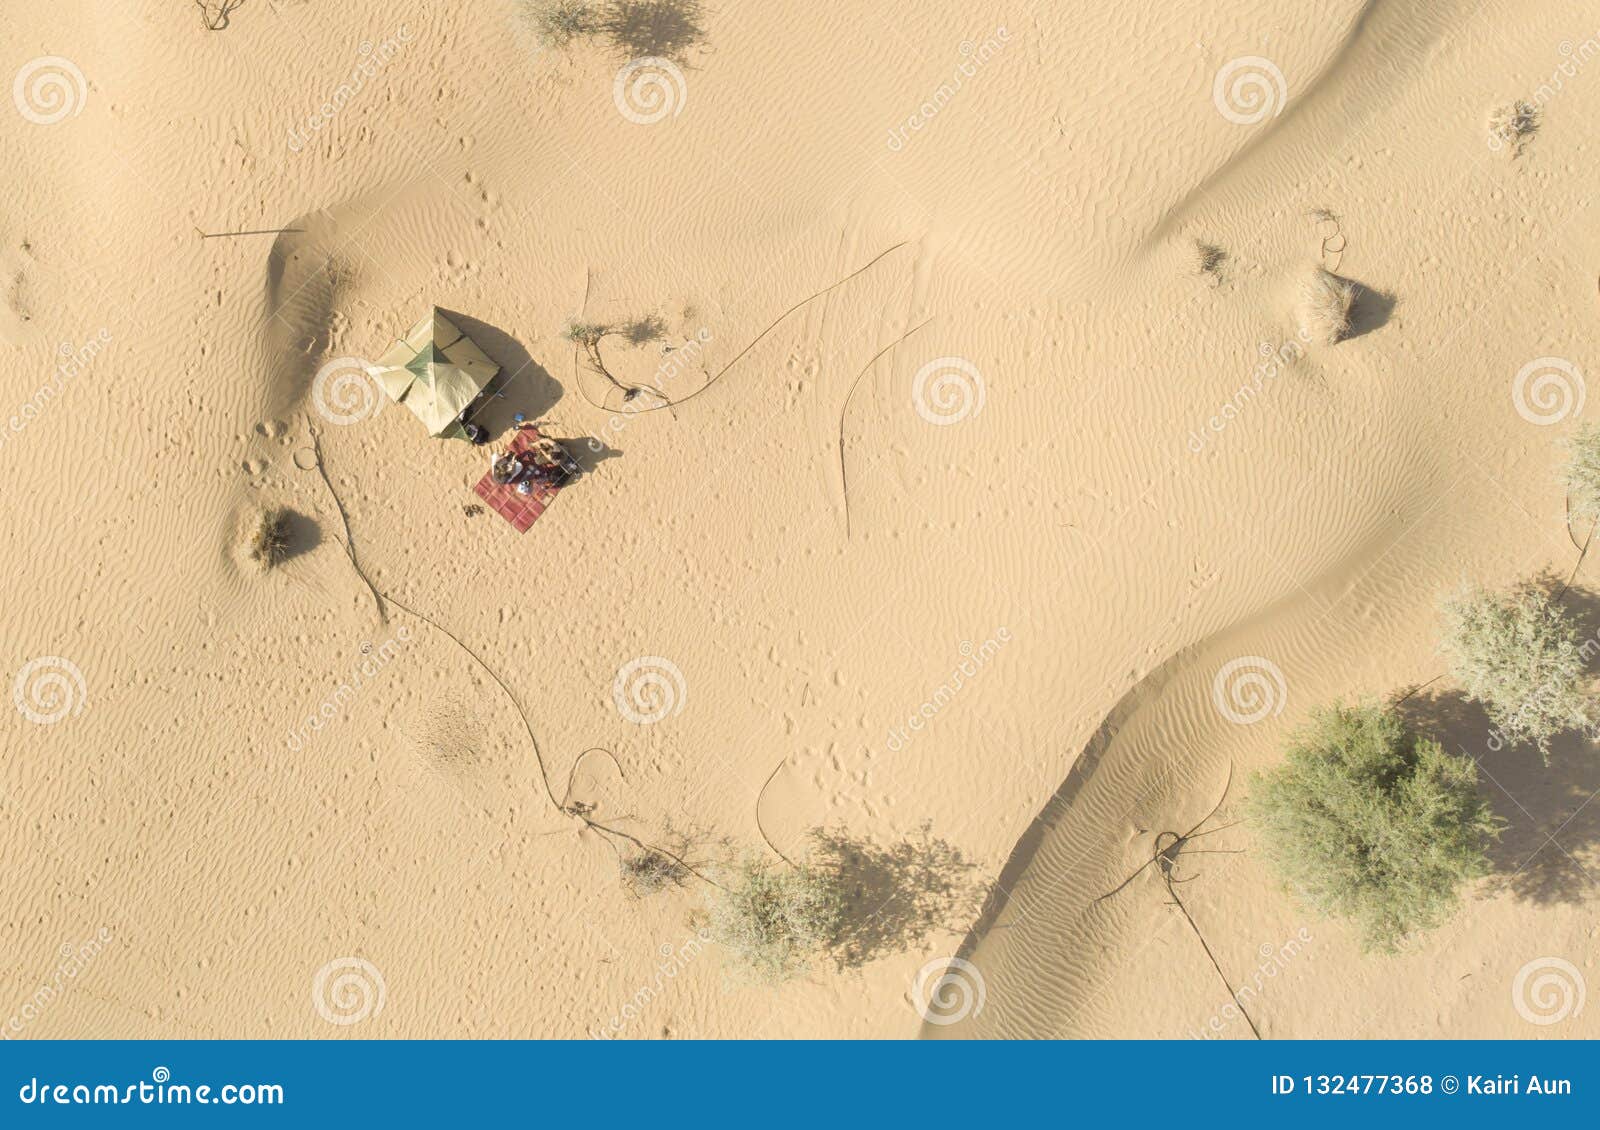 campsite in a desert near al qudra lakes